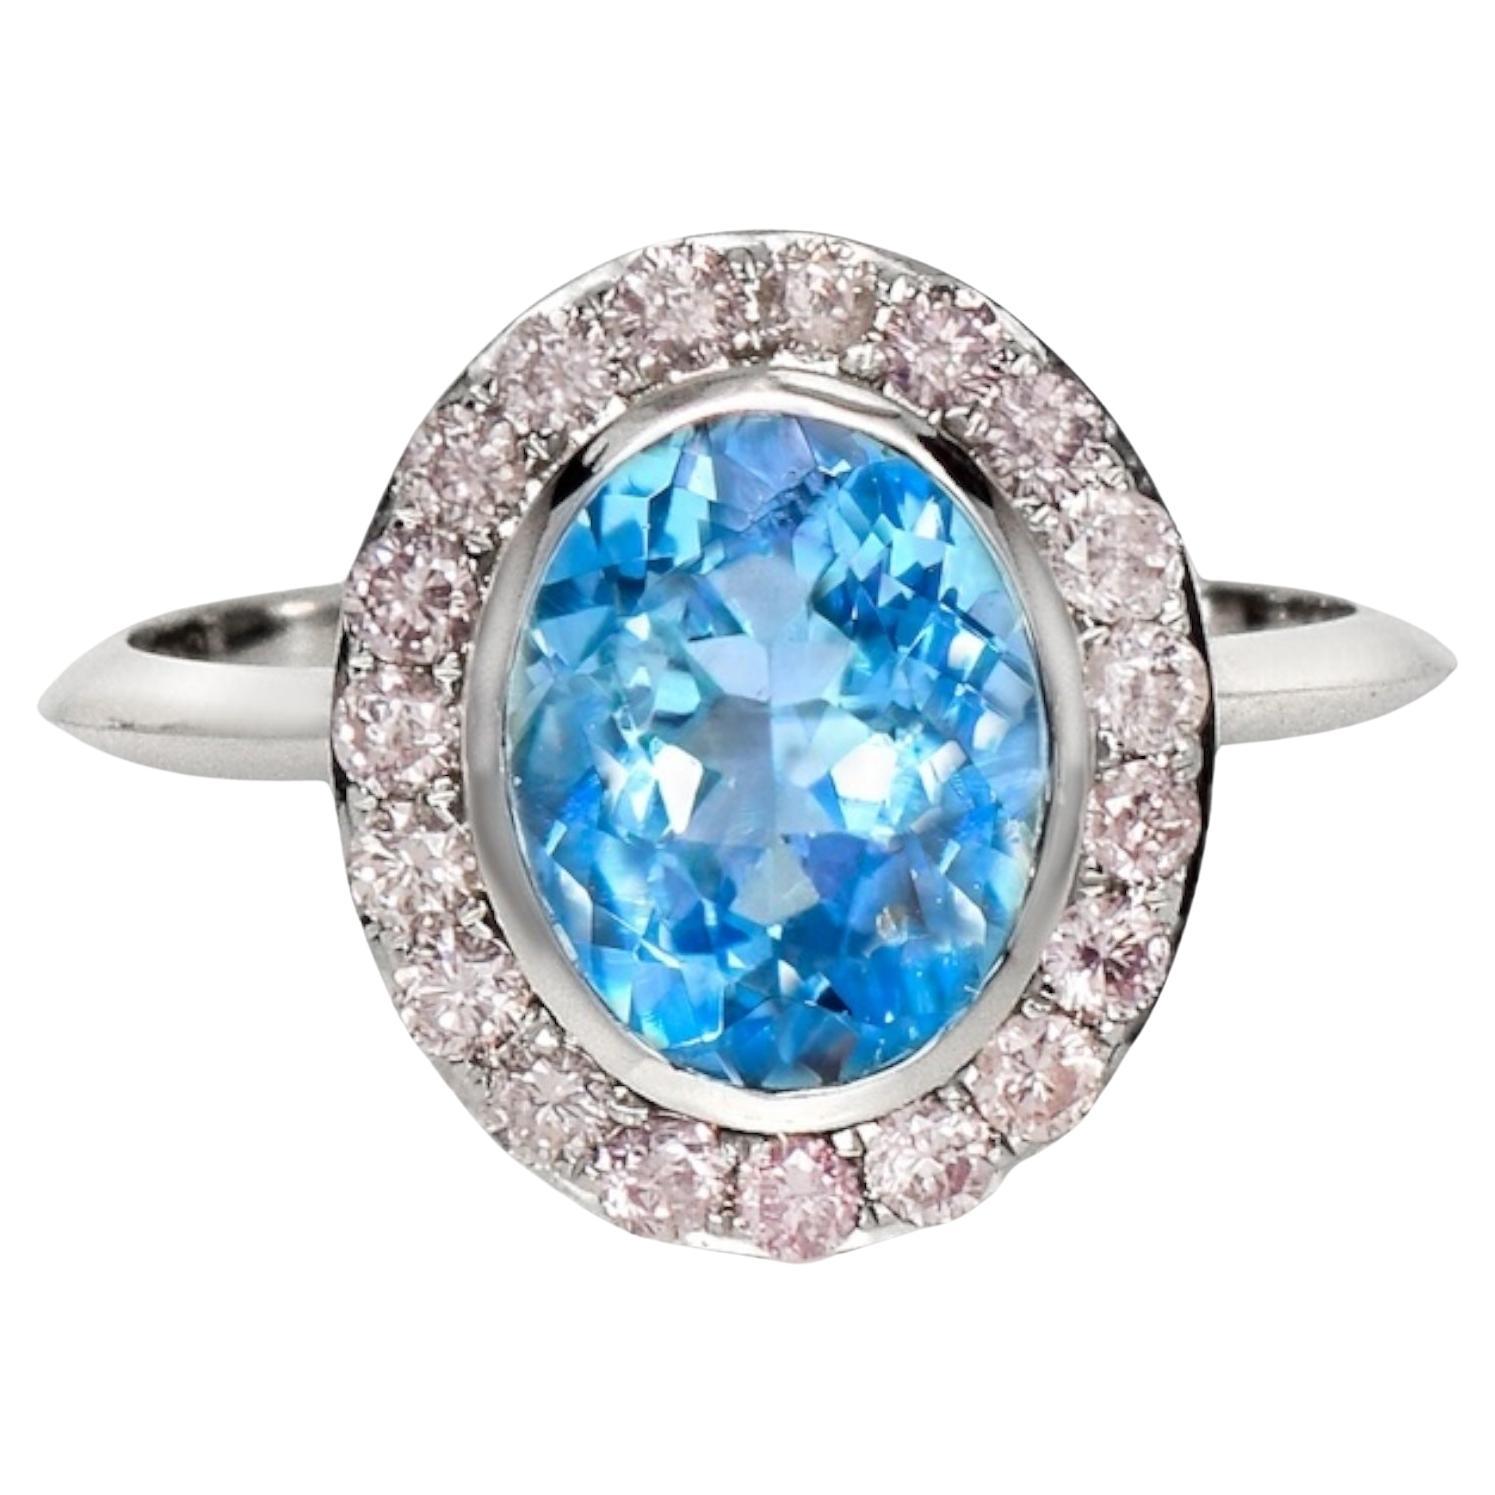 IGI 14K 1.77 Ct Aquamarine&Pink Diamonds Antique Art Deco Style Engagement Ring